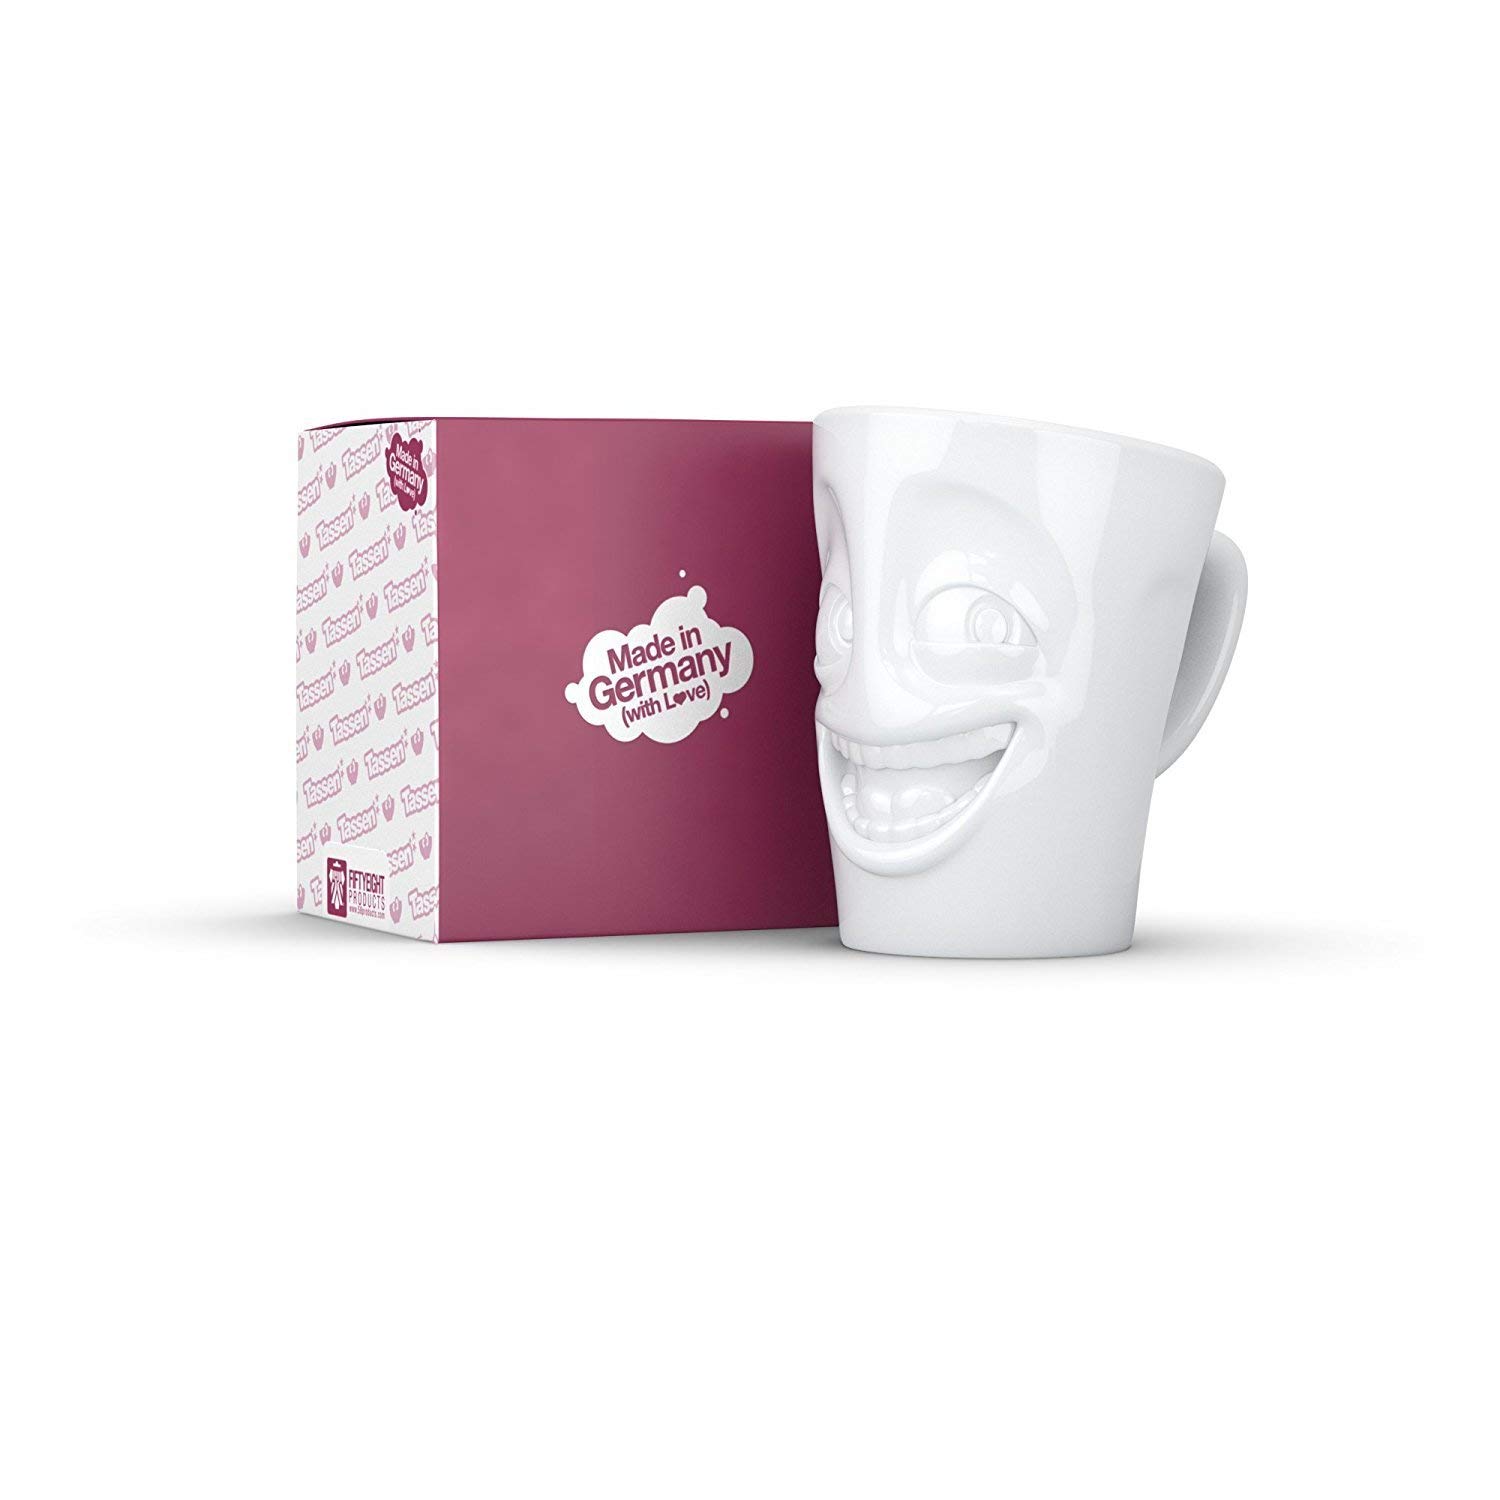 Populaire FIFTYEIGHT PRODUCTS Mug humoristique en porcelaine 350 ml Blanc Fabriqué en Allemagne 8Yj7ttLYe Outlet Shop 